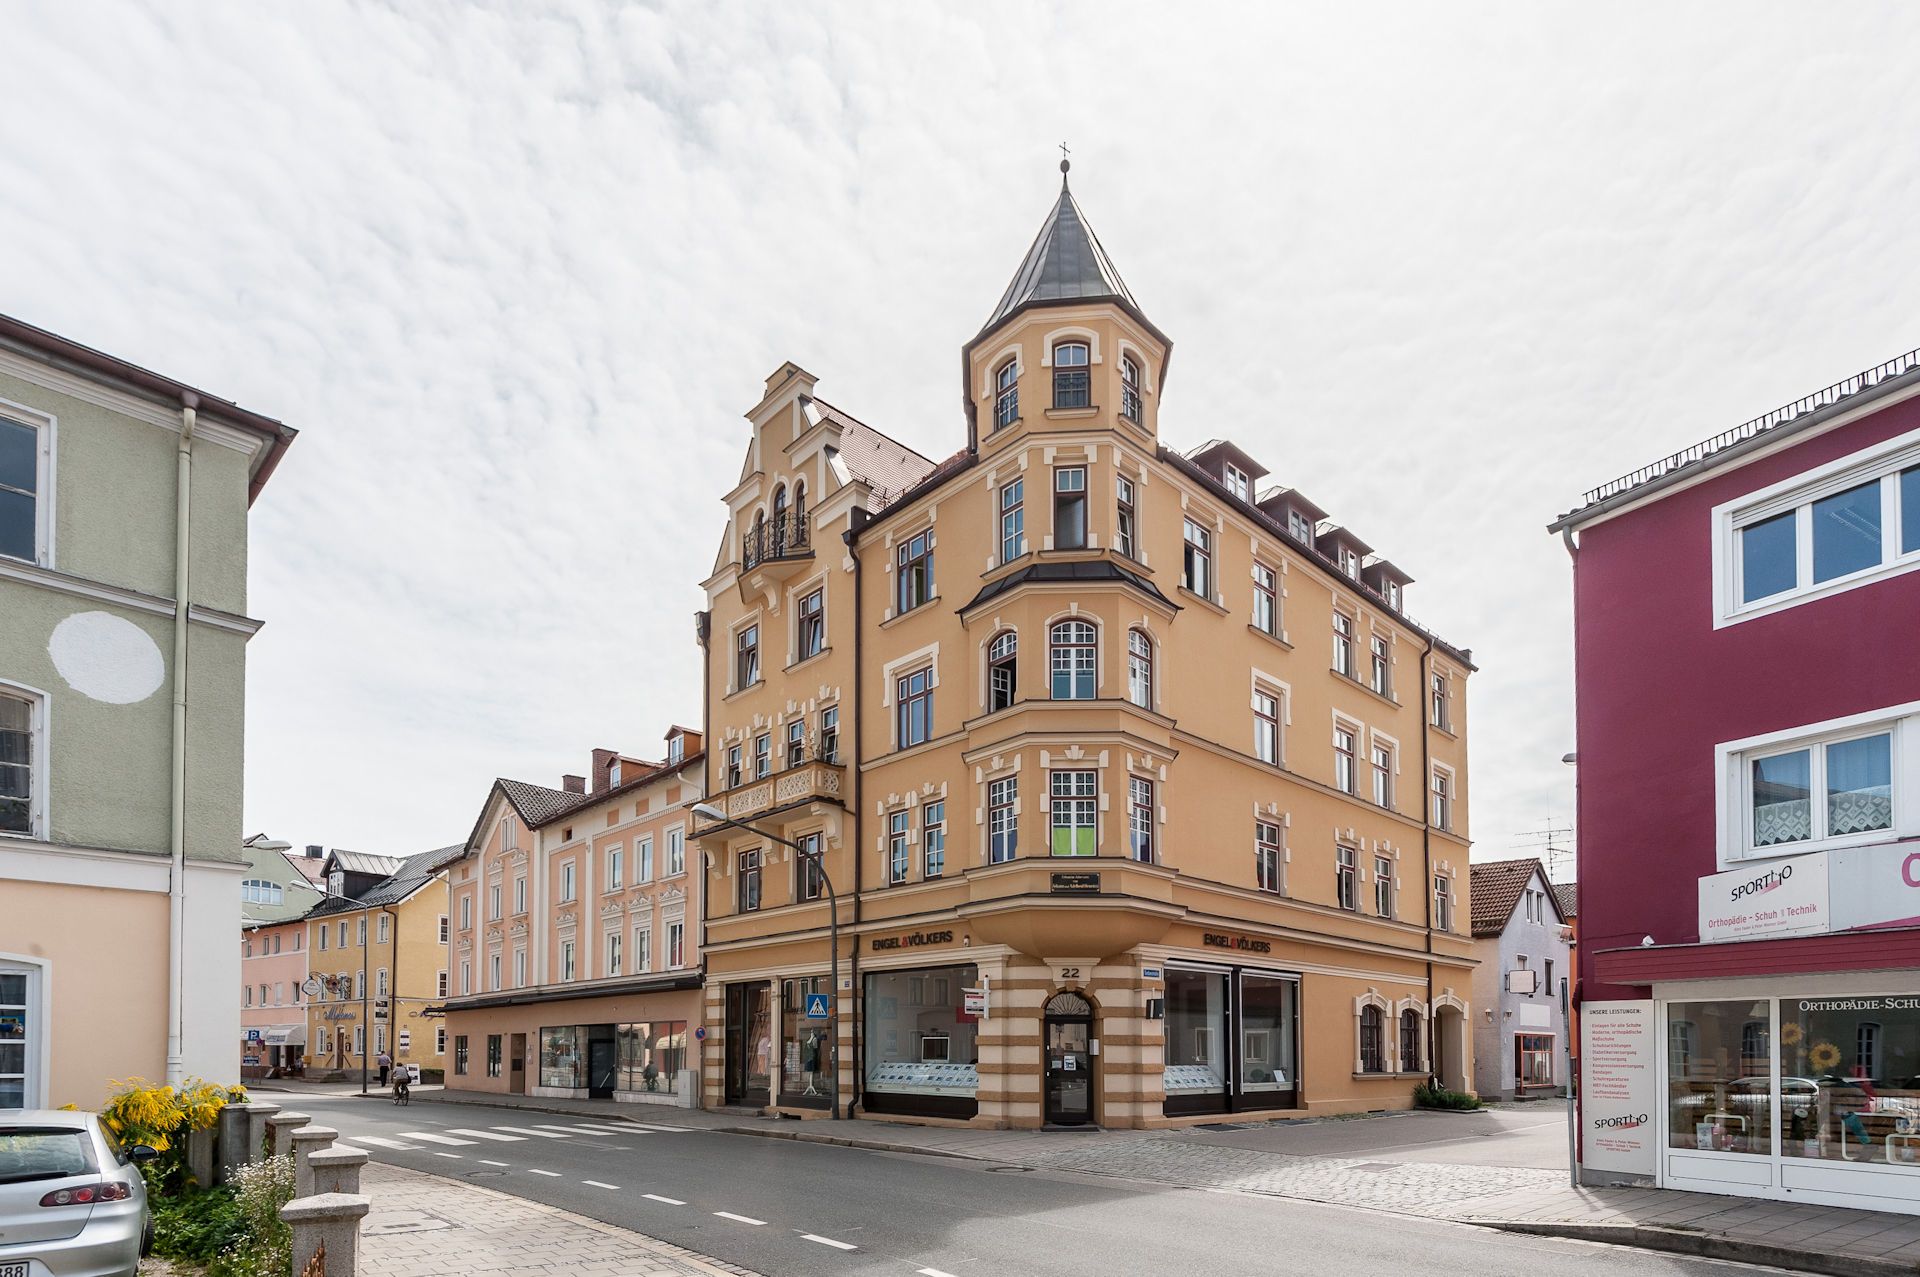 Frontansicht eines an einer Straßenkreuzung stehenden Wohn- und Geschäftshauses in Rosenheim, das durch energetische Sanierung modernisiert wurde